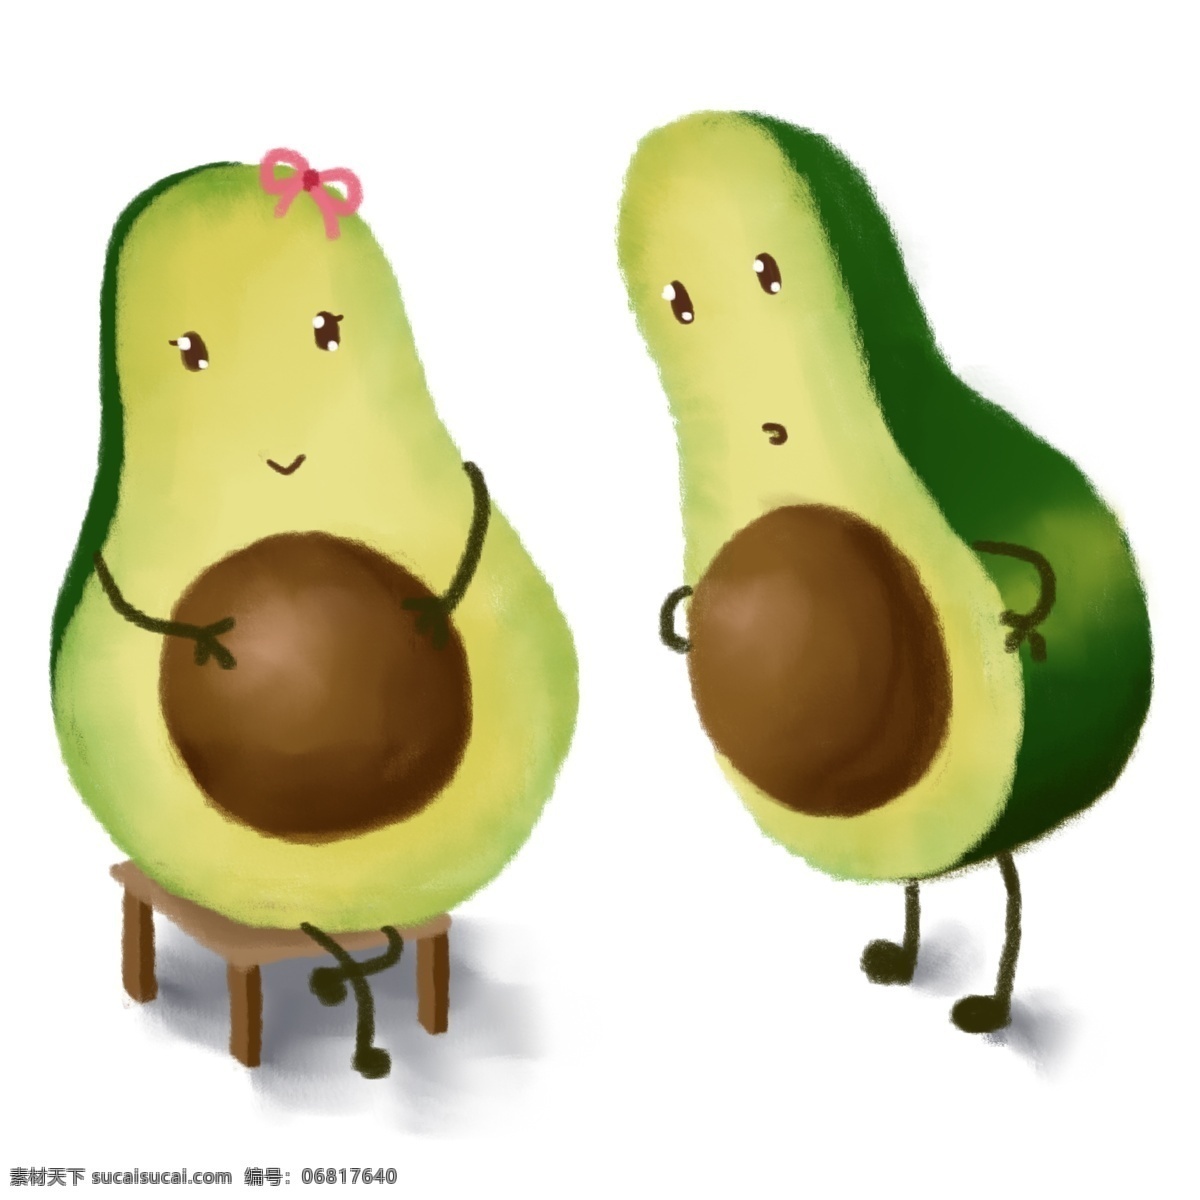 卡通 可爱 水果 笑脸 手绘 绿色 牛油果 两口子 美食 吃的 板凳 怀孕 童趣